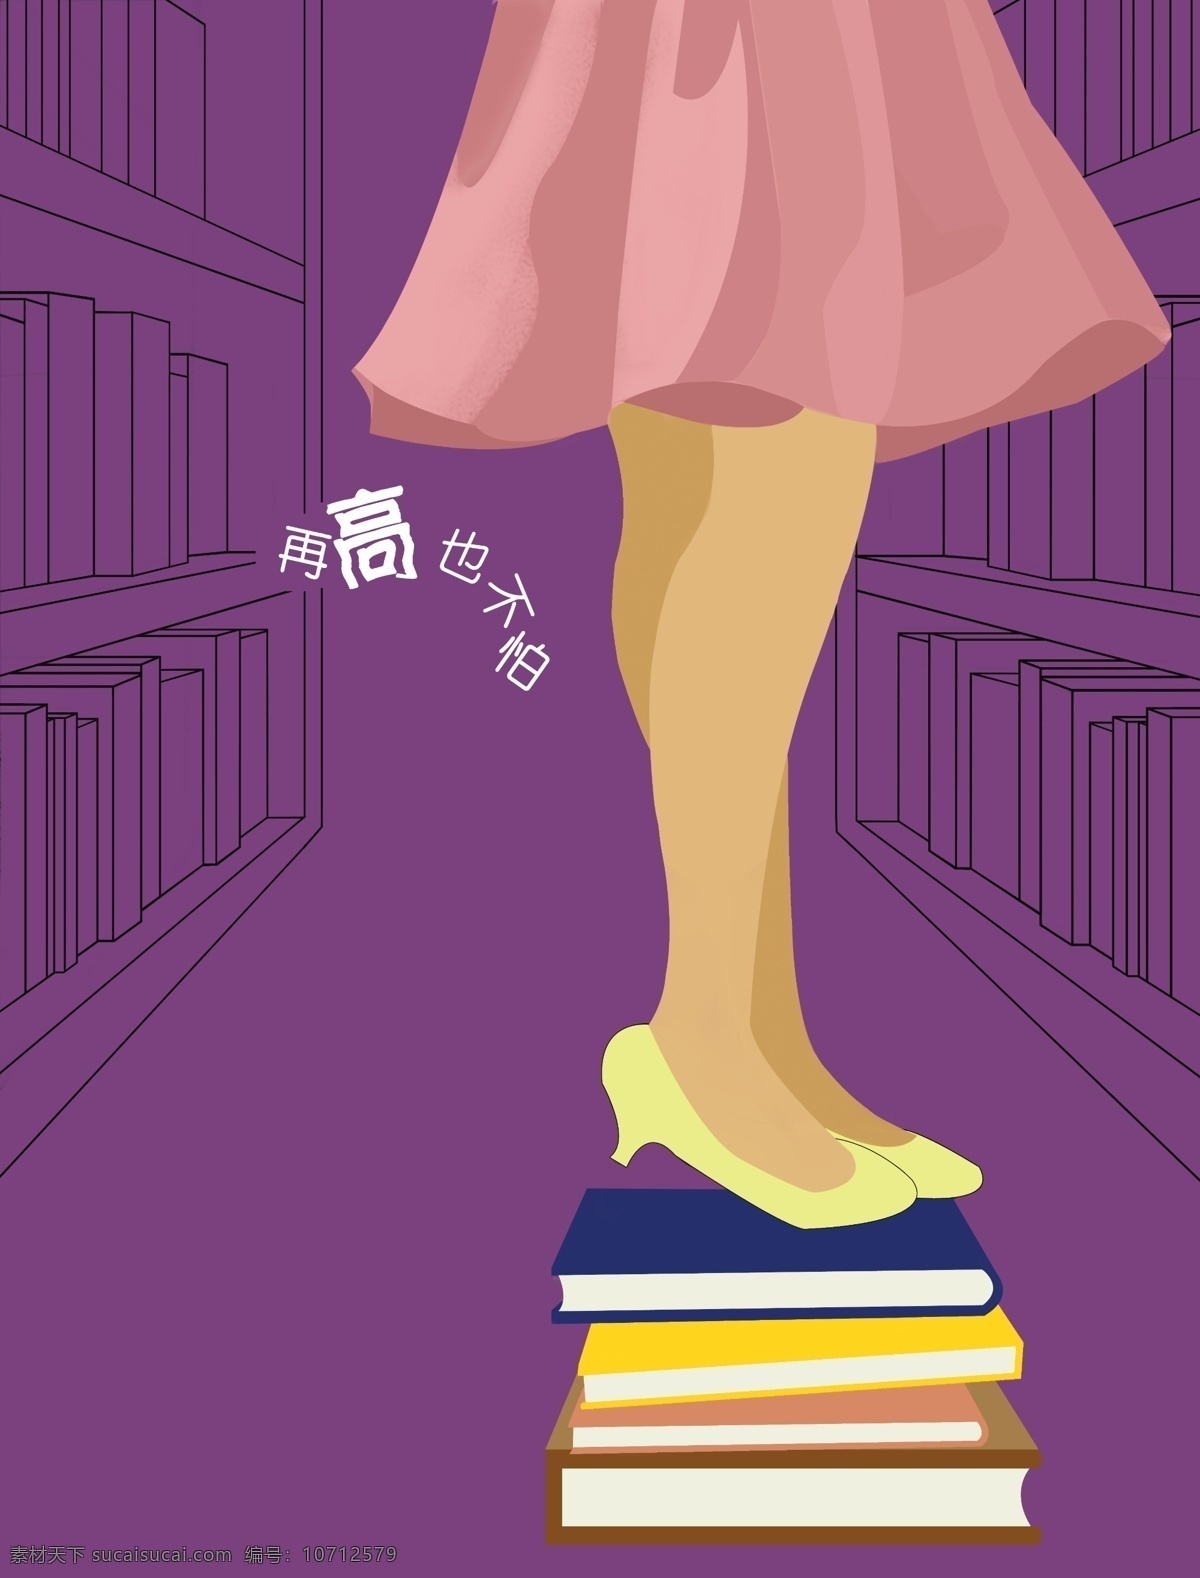 图书馆 篇 插画 再 高 不怕 分层 高跟鞋 女孩 书 书架 源文件 粉色短裙 插画集